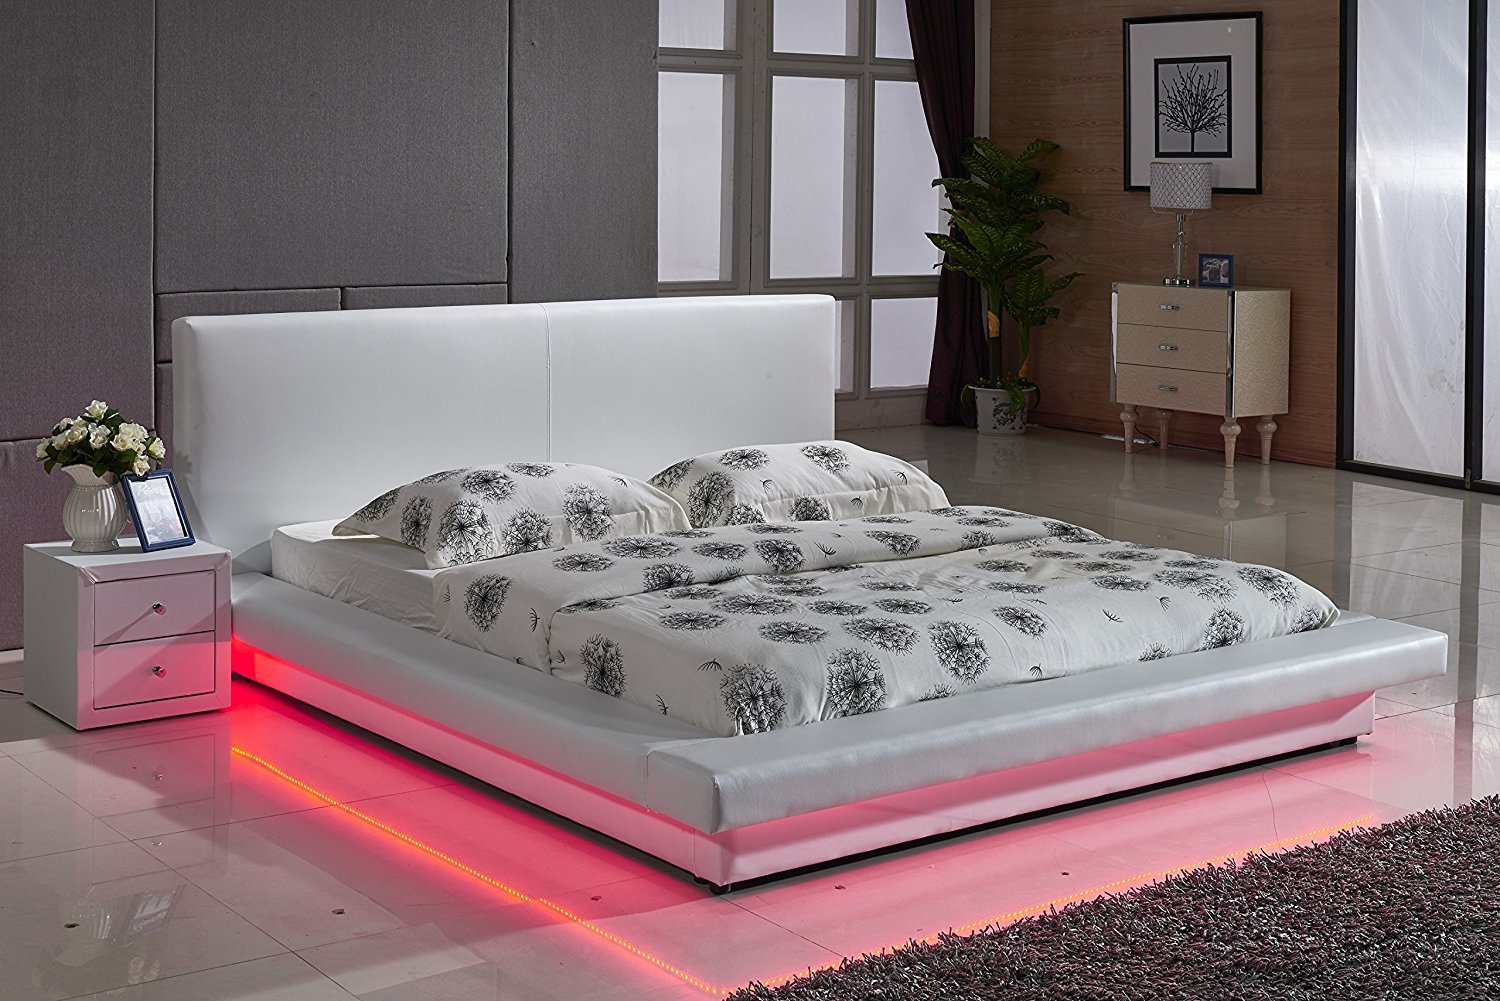 Современная кровать с подсветкой